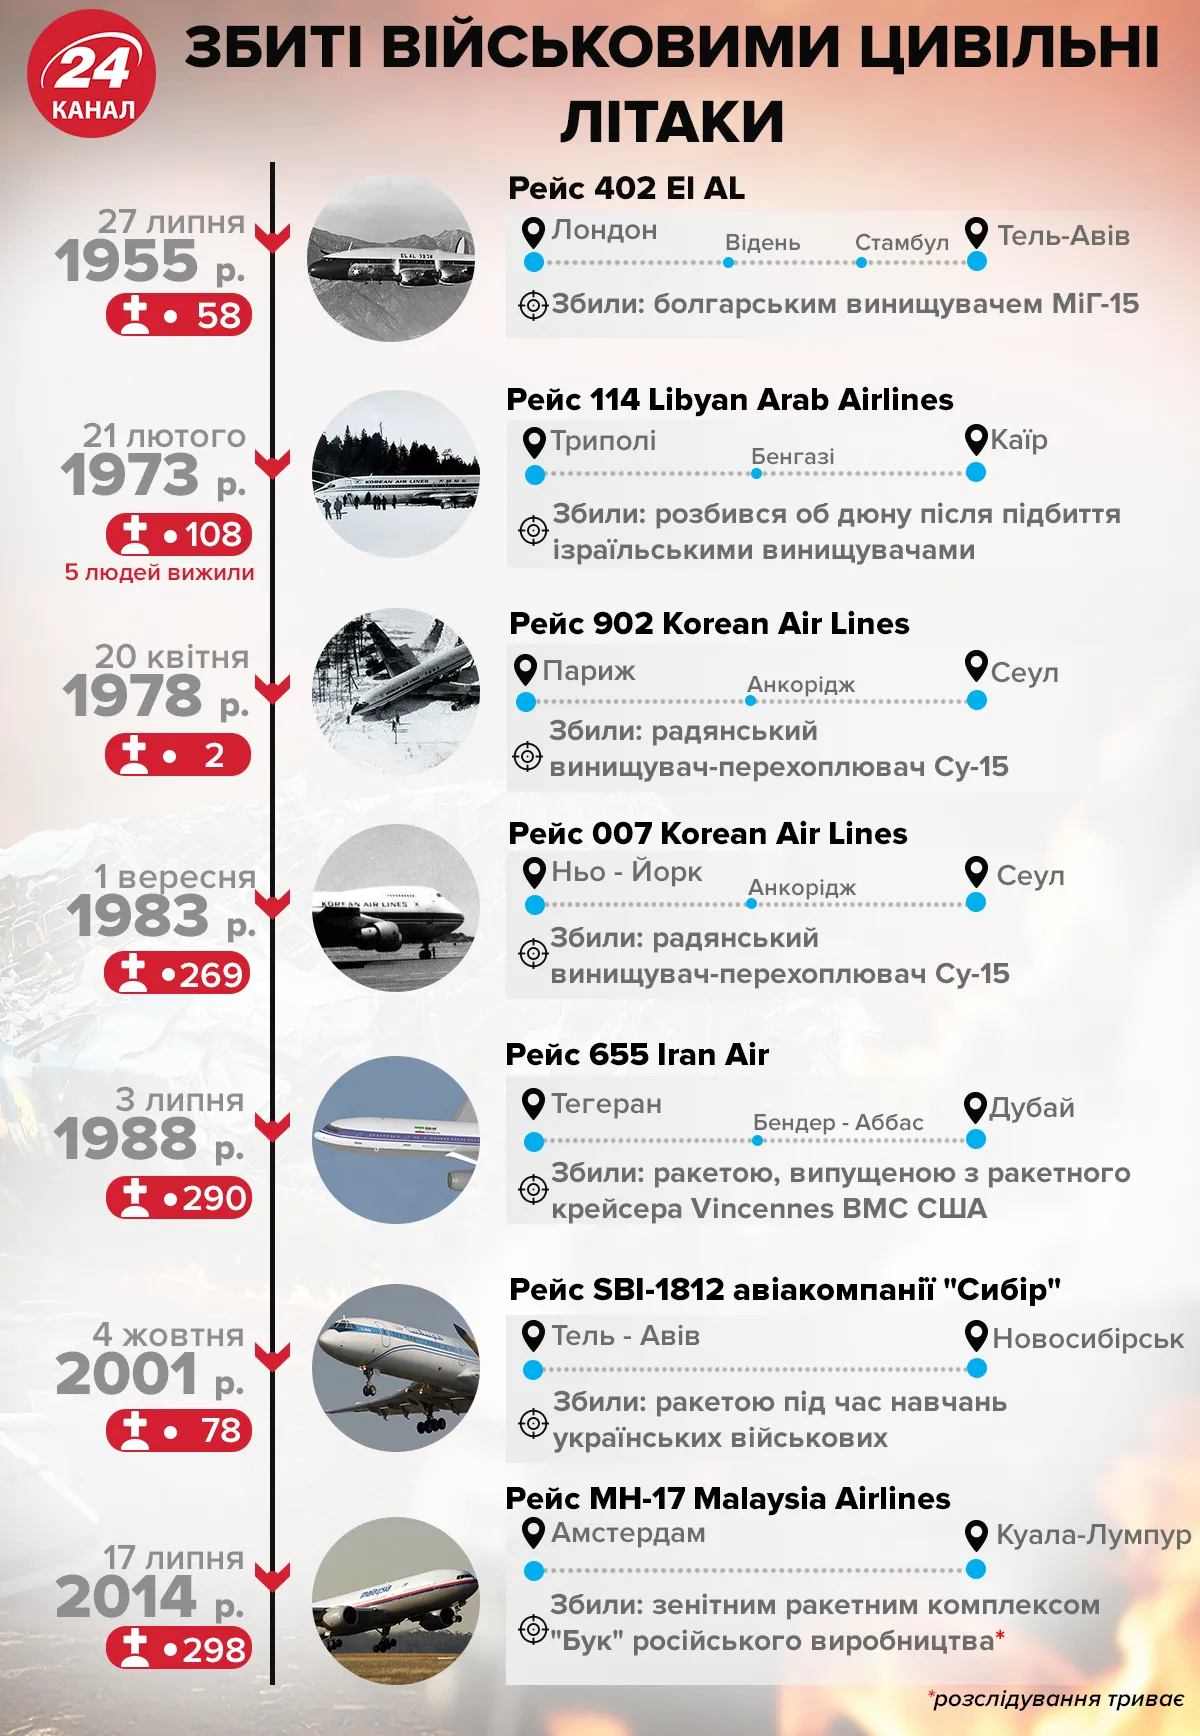 Сбитые военными гражданские самолеты  Инфографика 24 канал